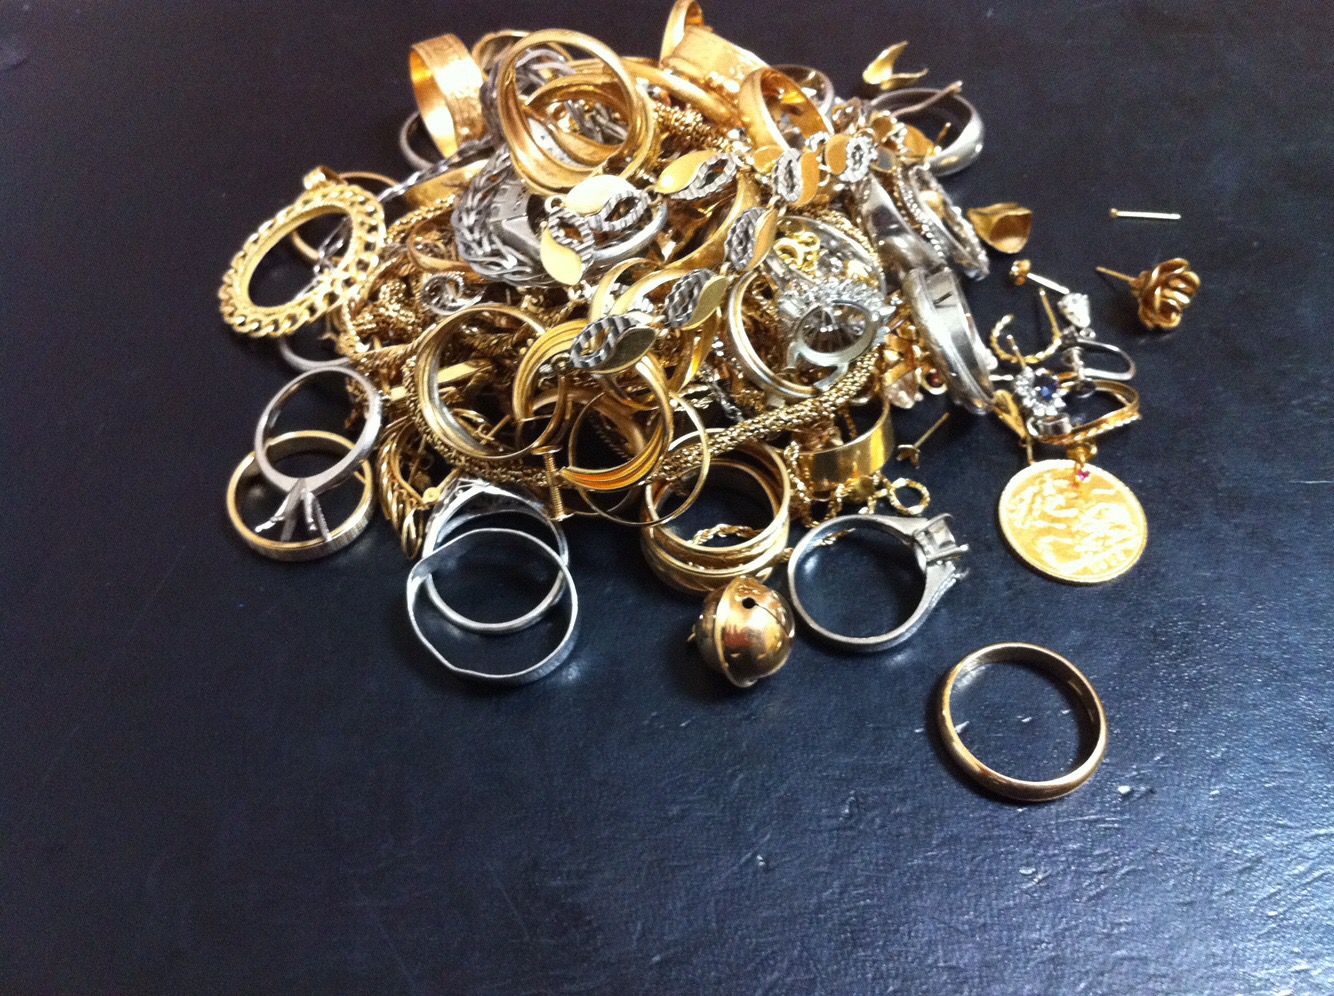 指輪やネックレスなどの貴金属